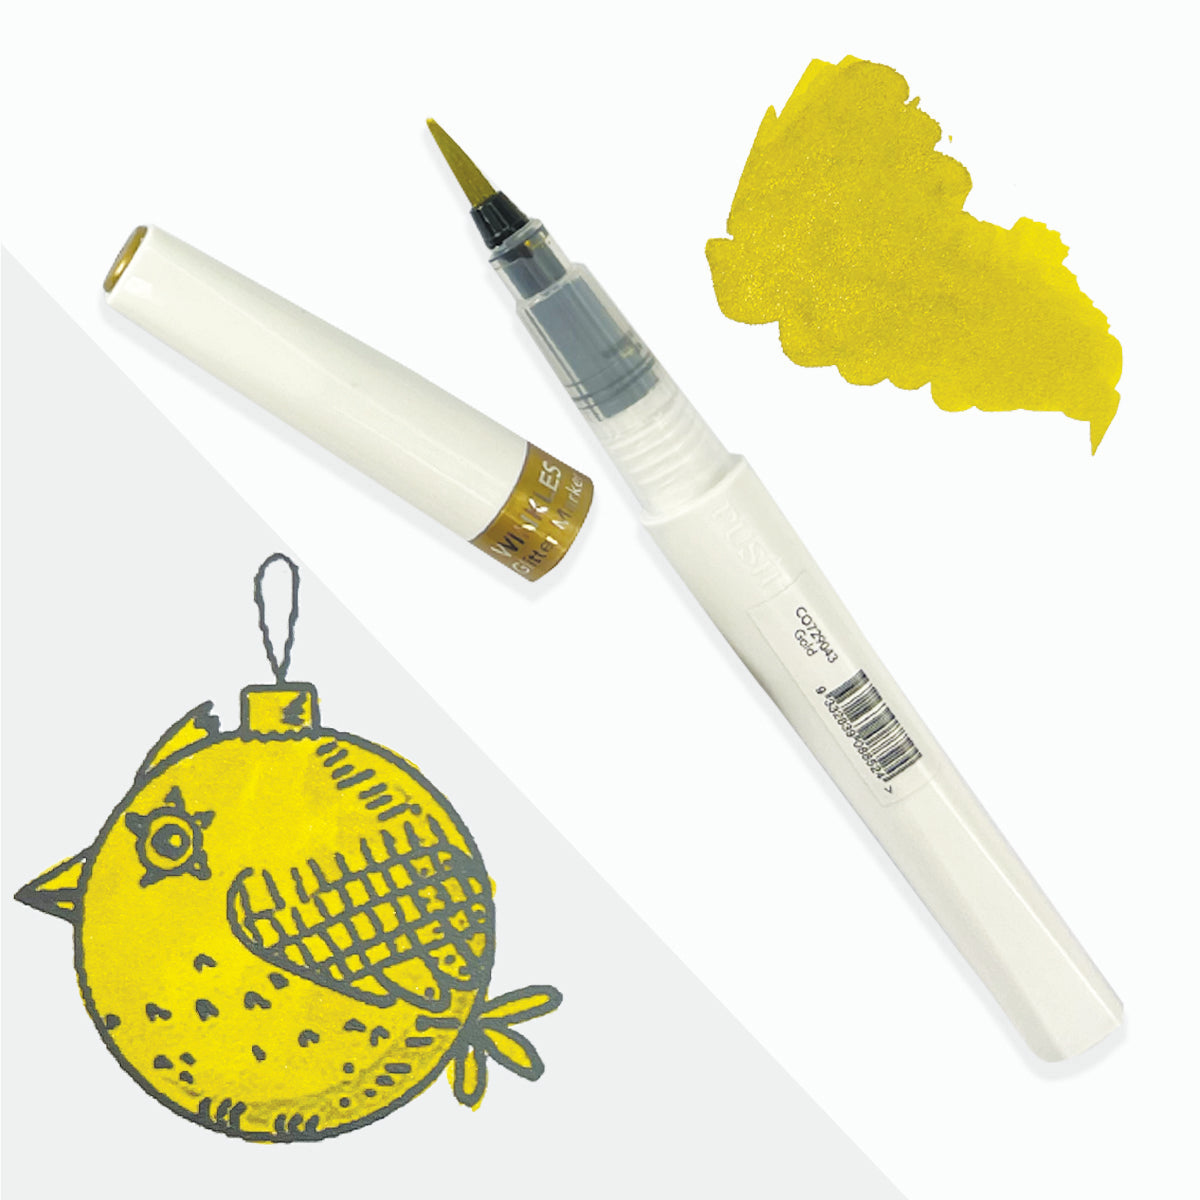 Winkles Shimmer Glitter Pen Set – 12 colours in carry case (holds 24 pens)